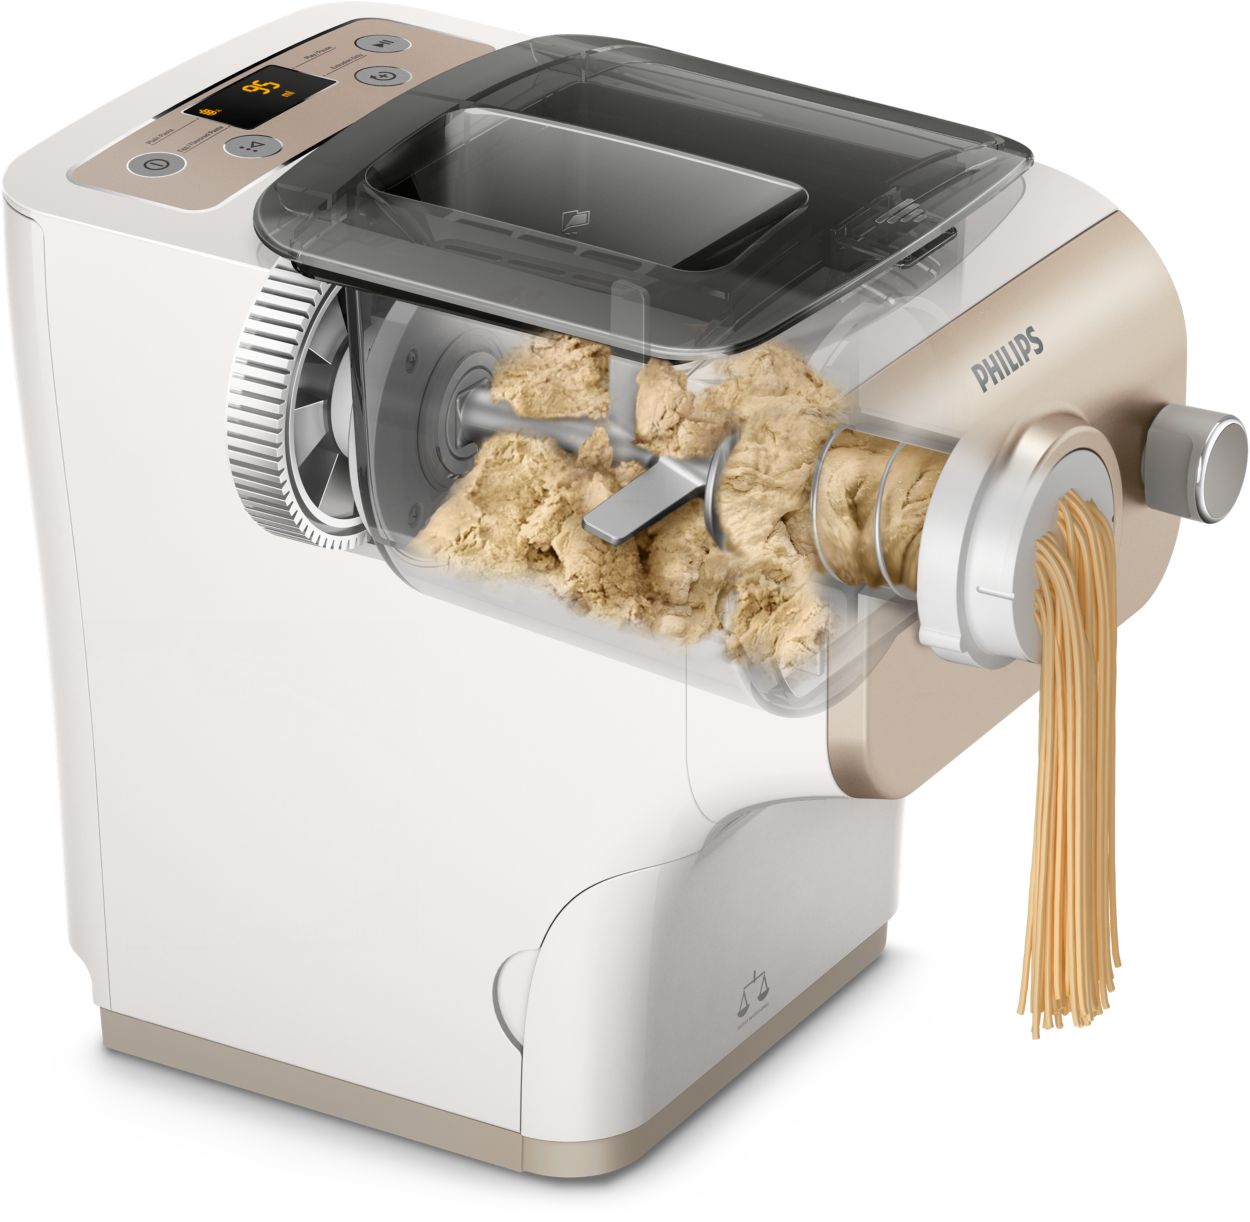 Mon évaluation de la machine à pâtes Avance de Philips - Blogue